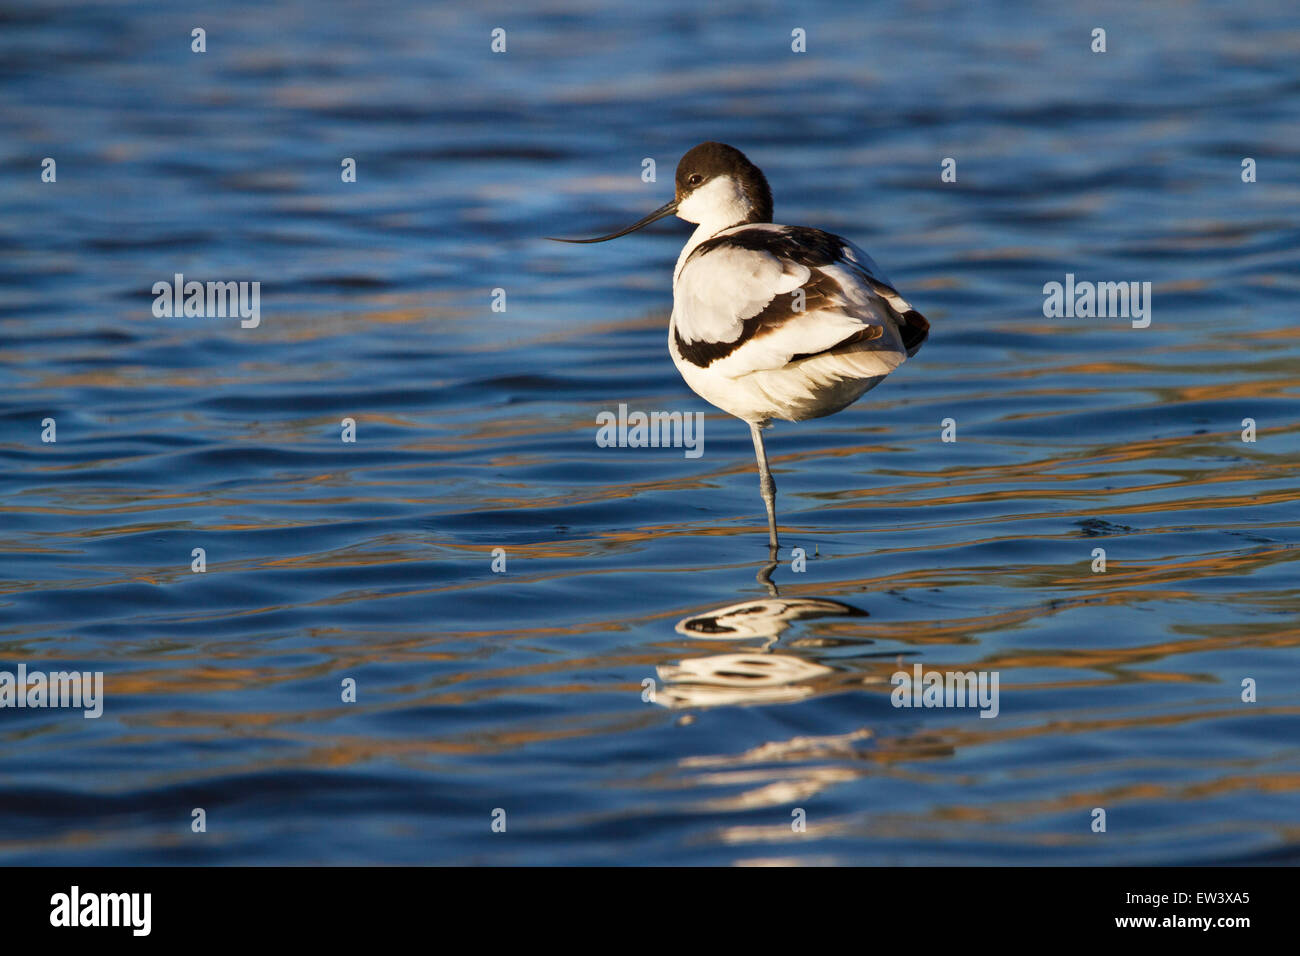 Pied avocet (Recurvirostra avosetta) in appoggio su una gamba in acque poco profonde in zona umida Foto Stock